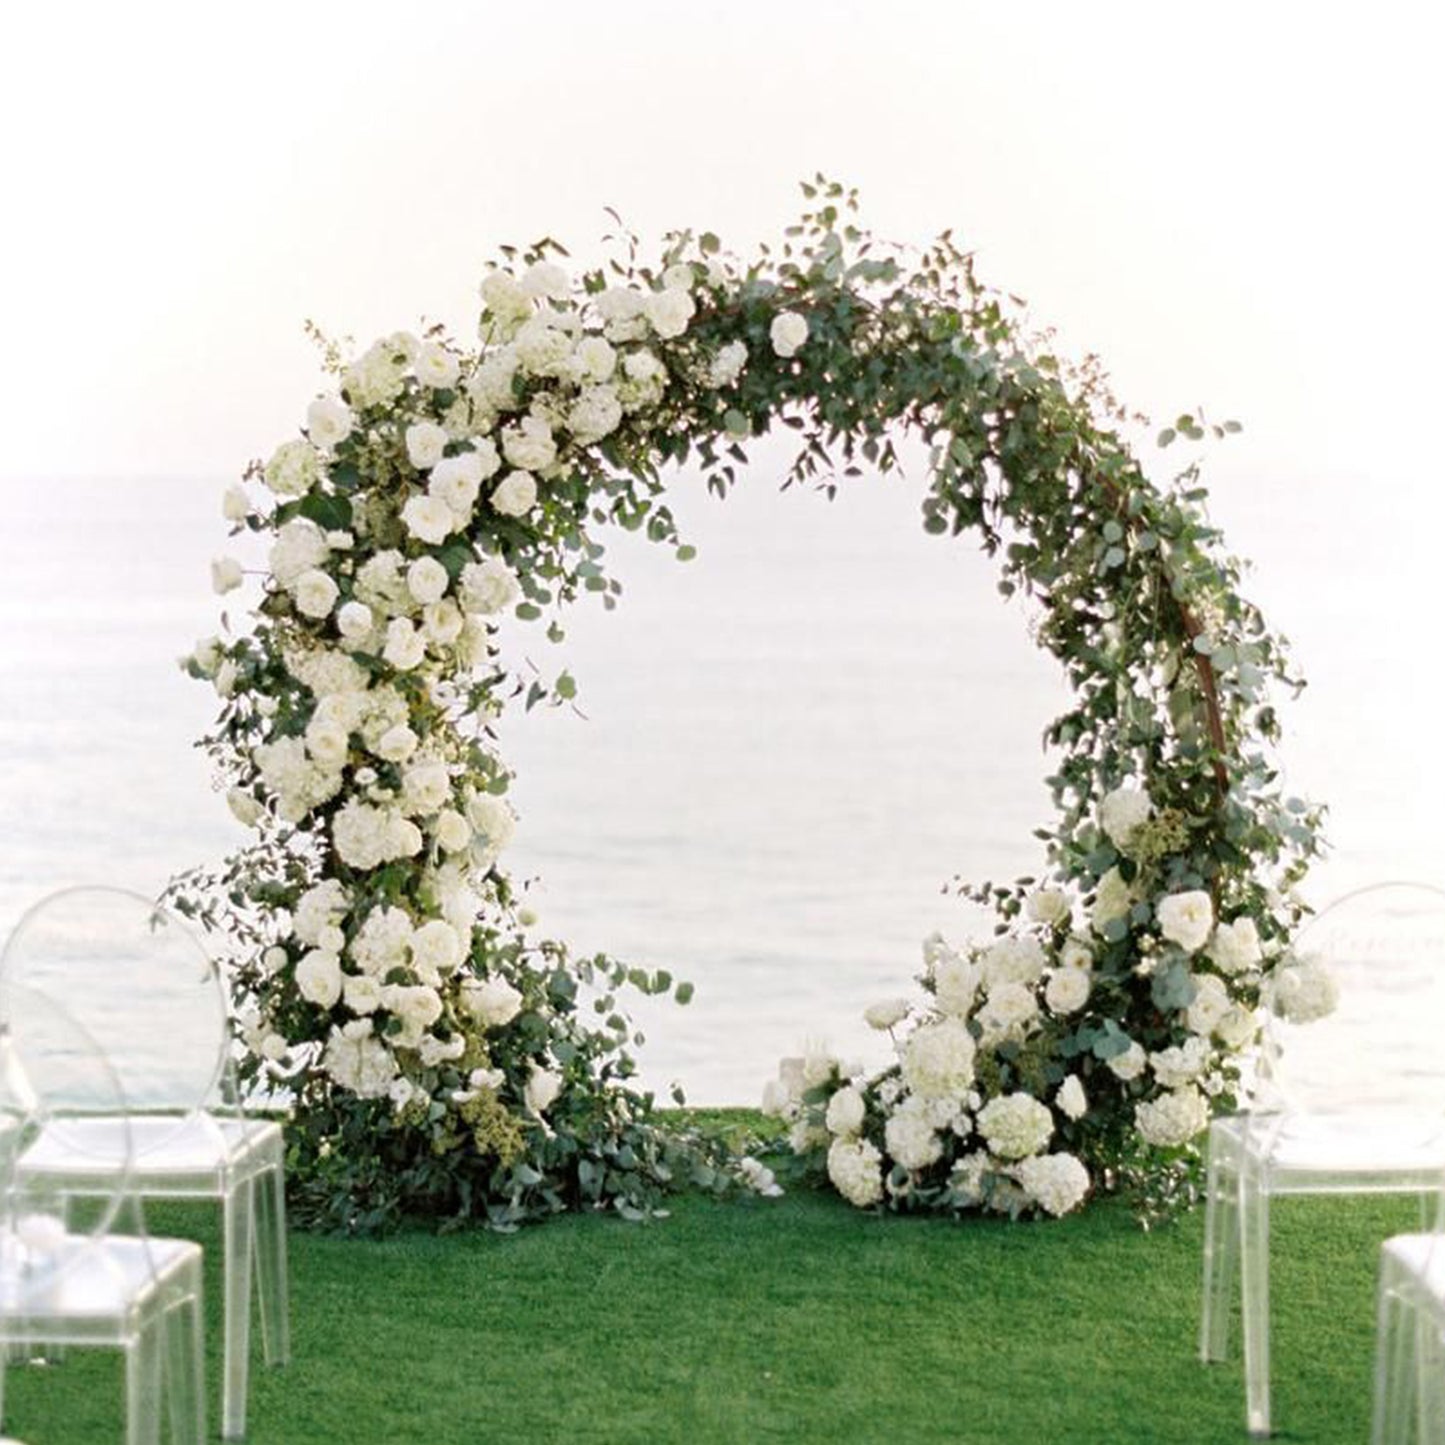 Round Wedding Archway Floral Stand